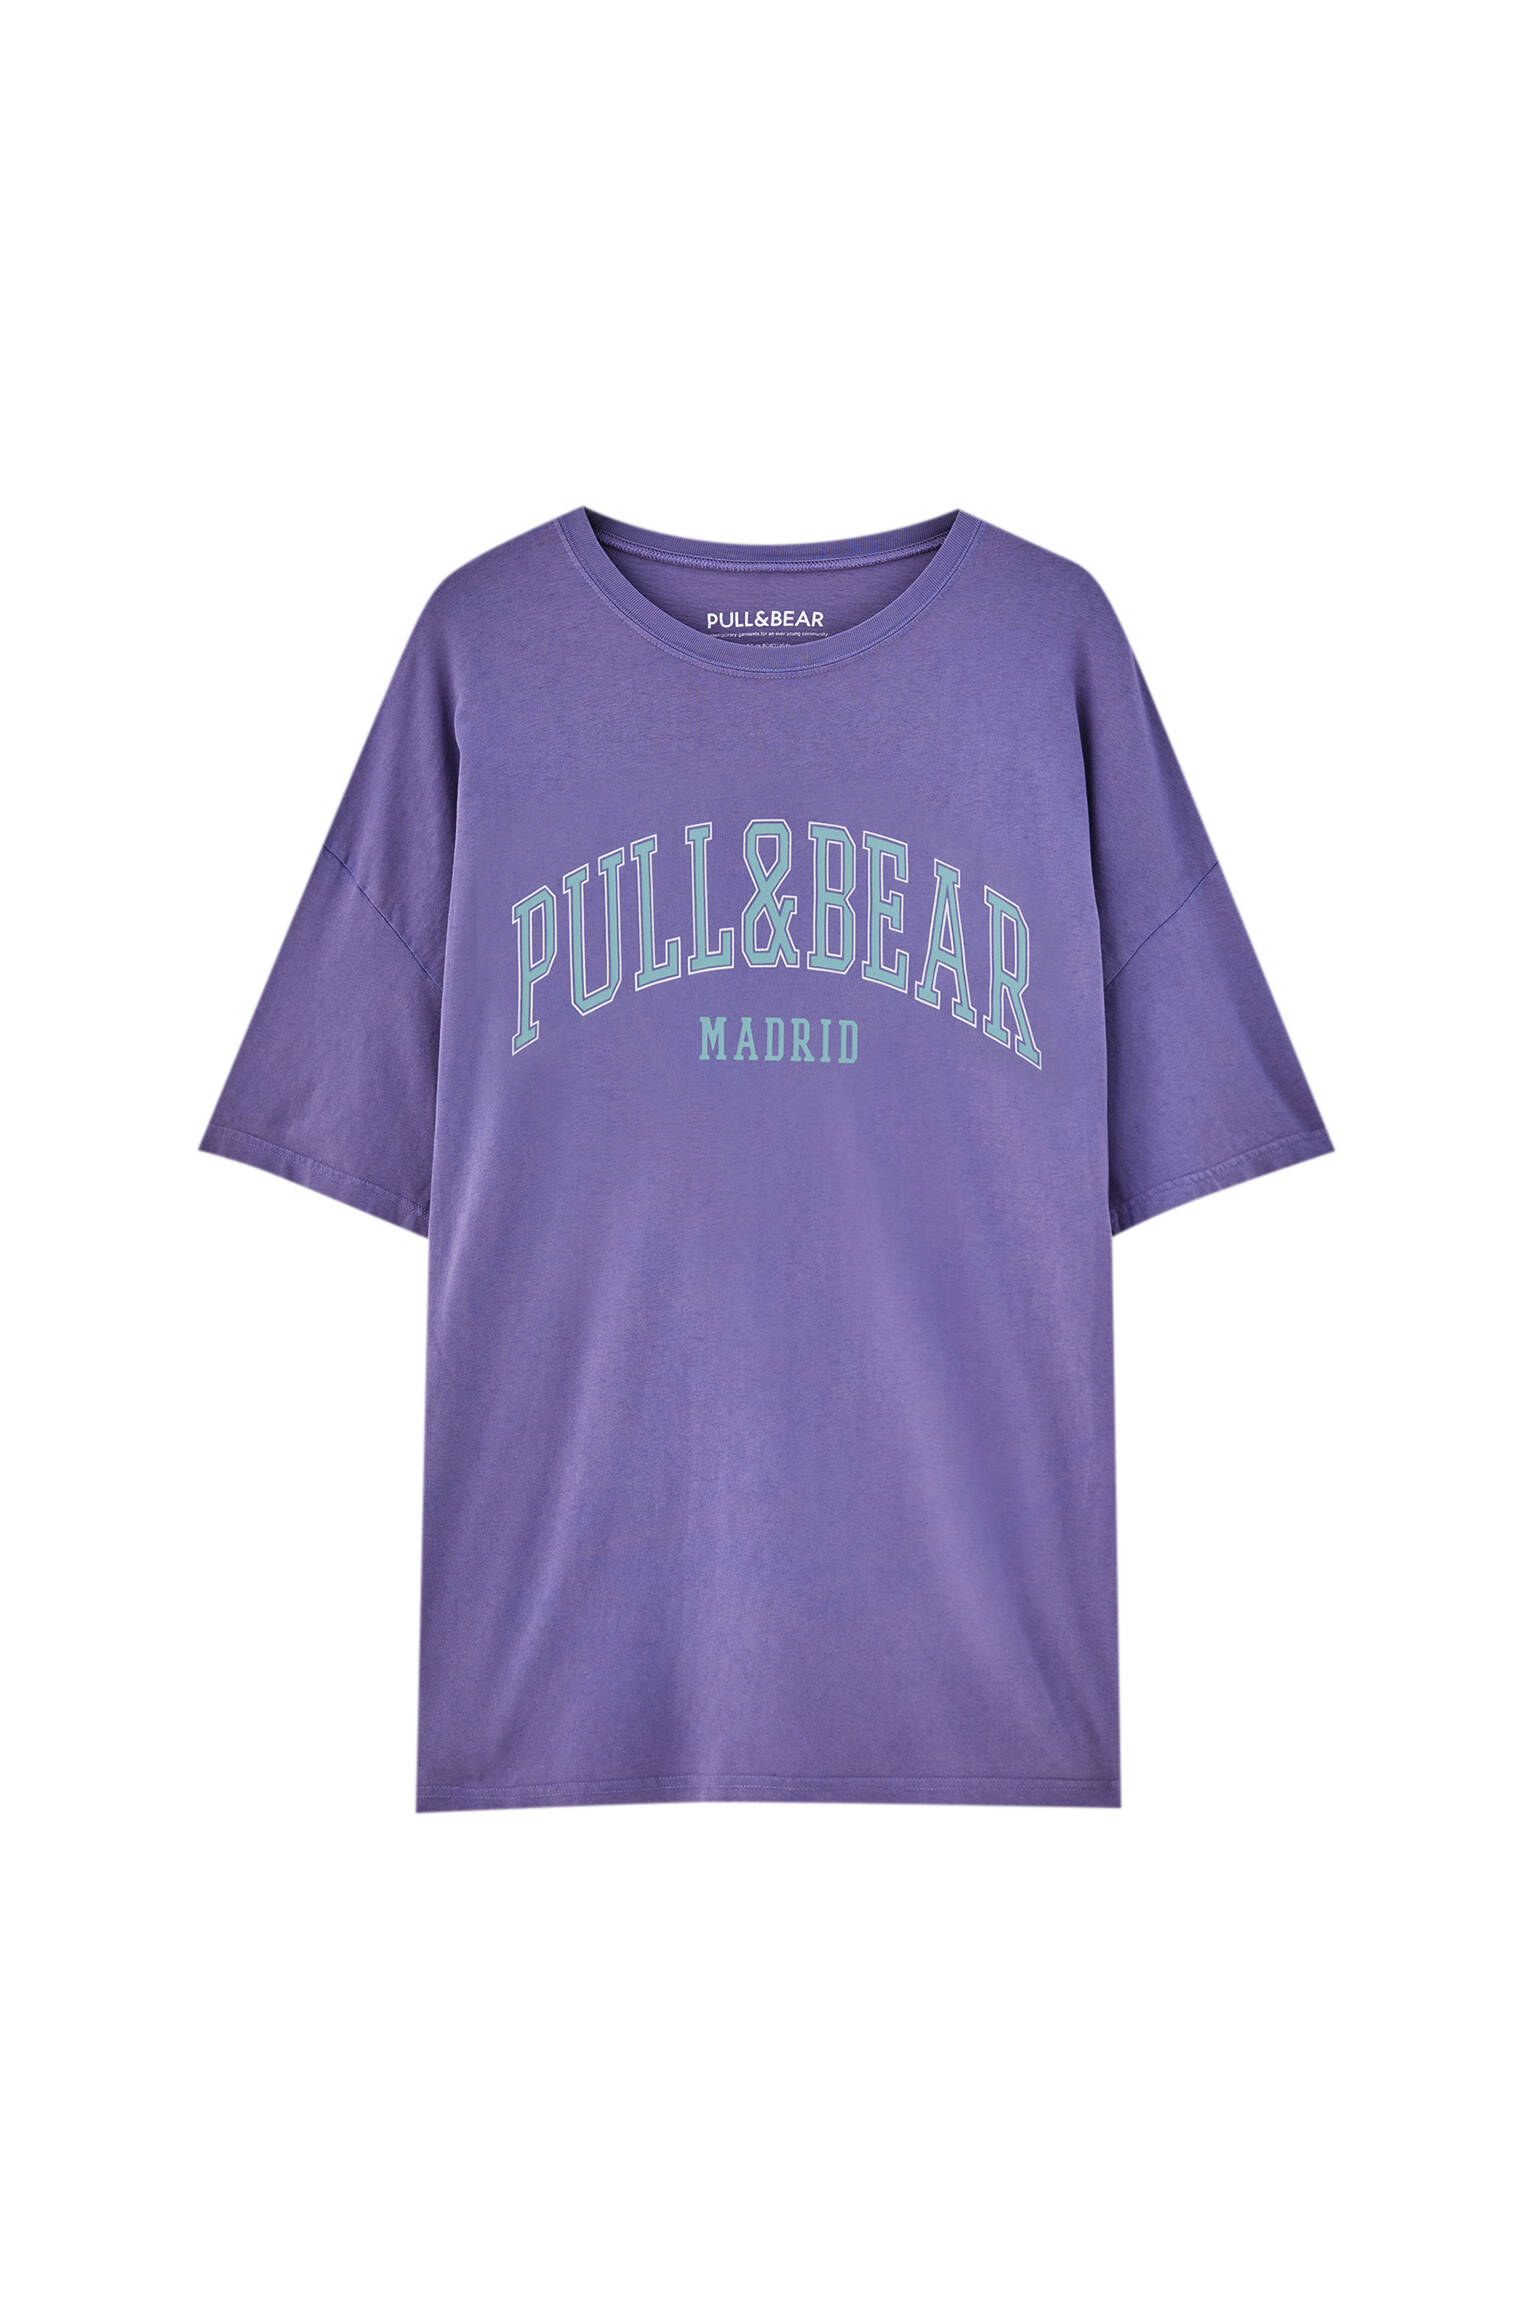 Pull&bear Homme T-shirt Basique 100 % Coton à Manches Courtes Et Col Rond, Avec Logo Pull&bear Et Inscription « madrid » Contrastante. Disponible En Plusieurs Couleurs. Violet L